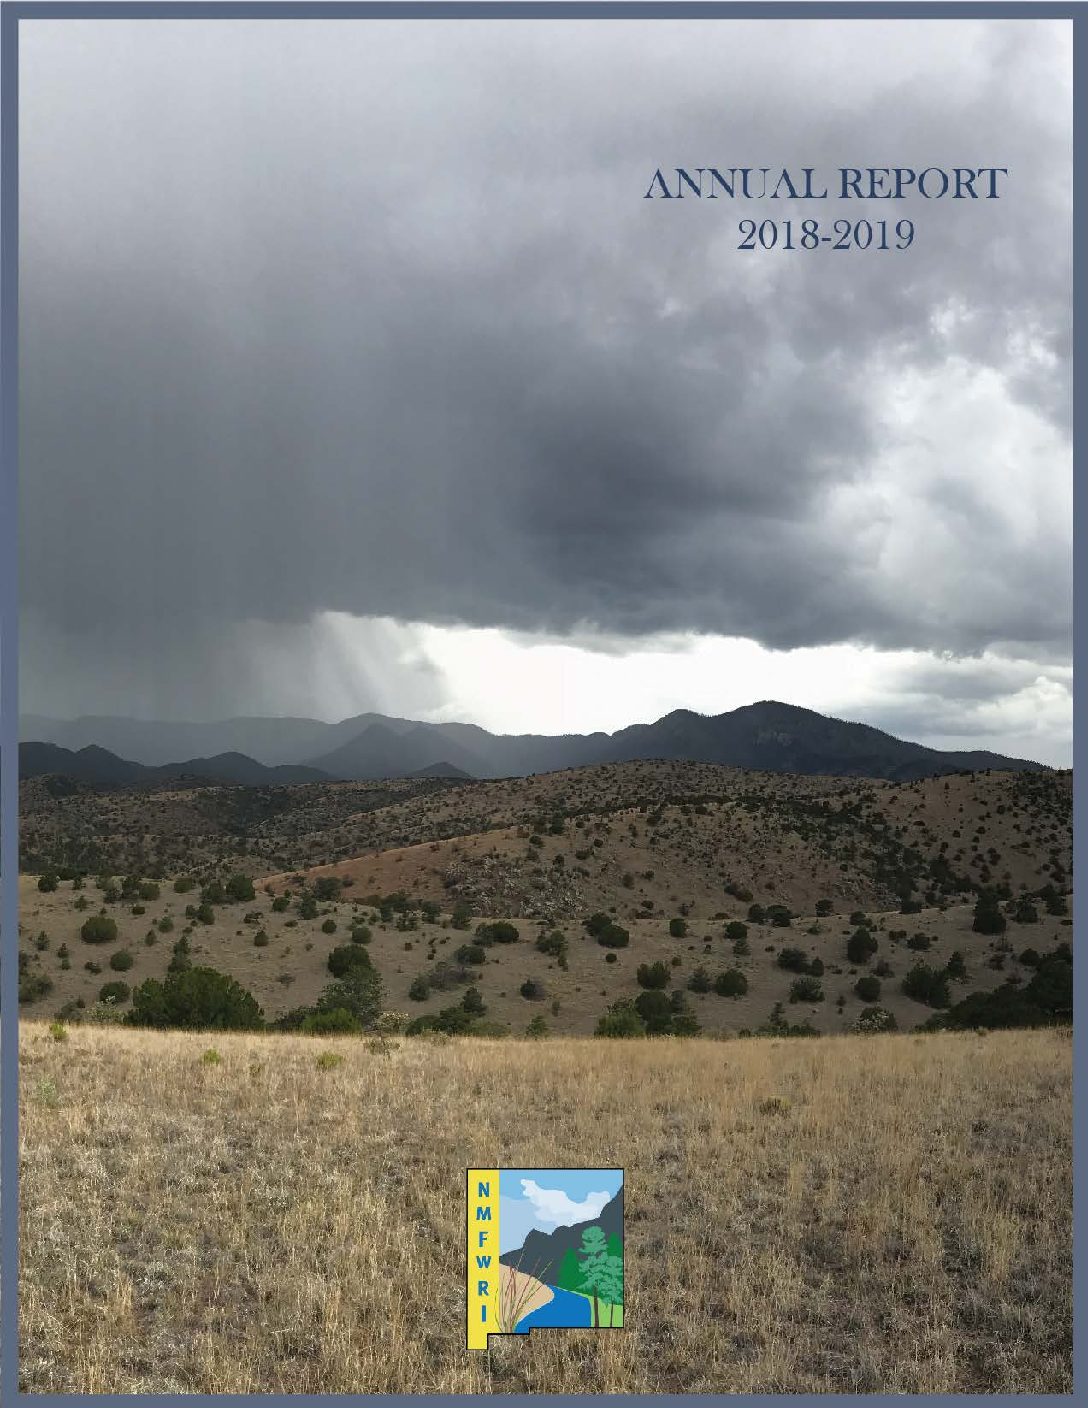 NMFWRI Annual Report 2018-2019